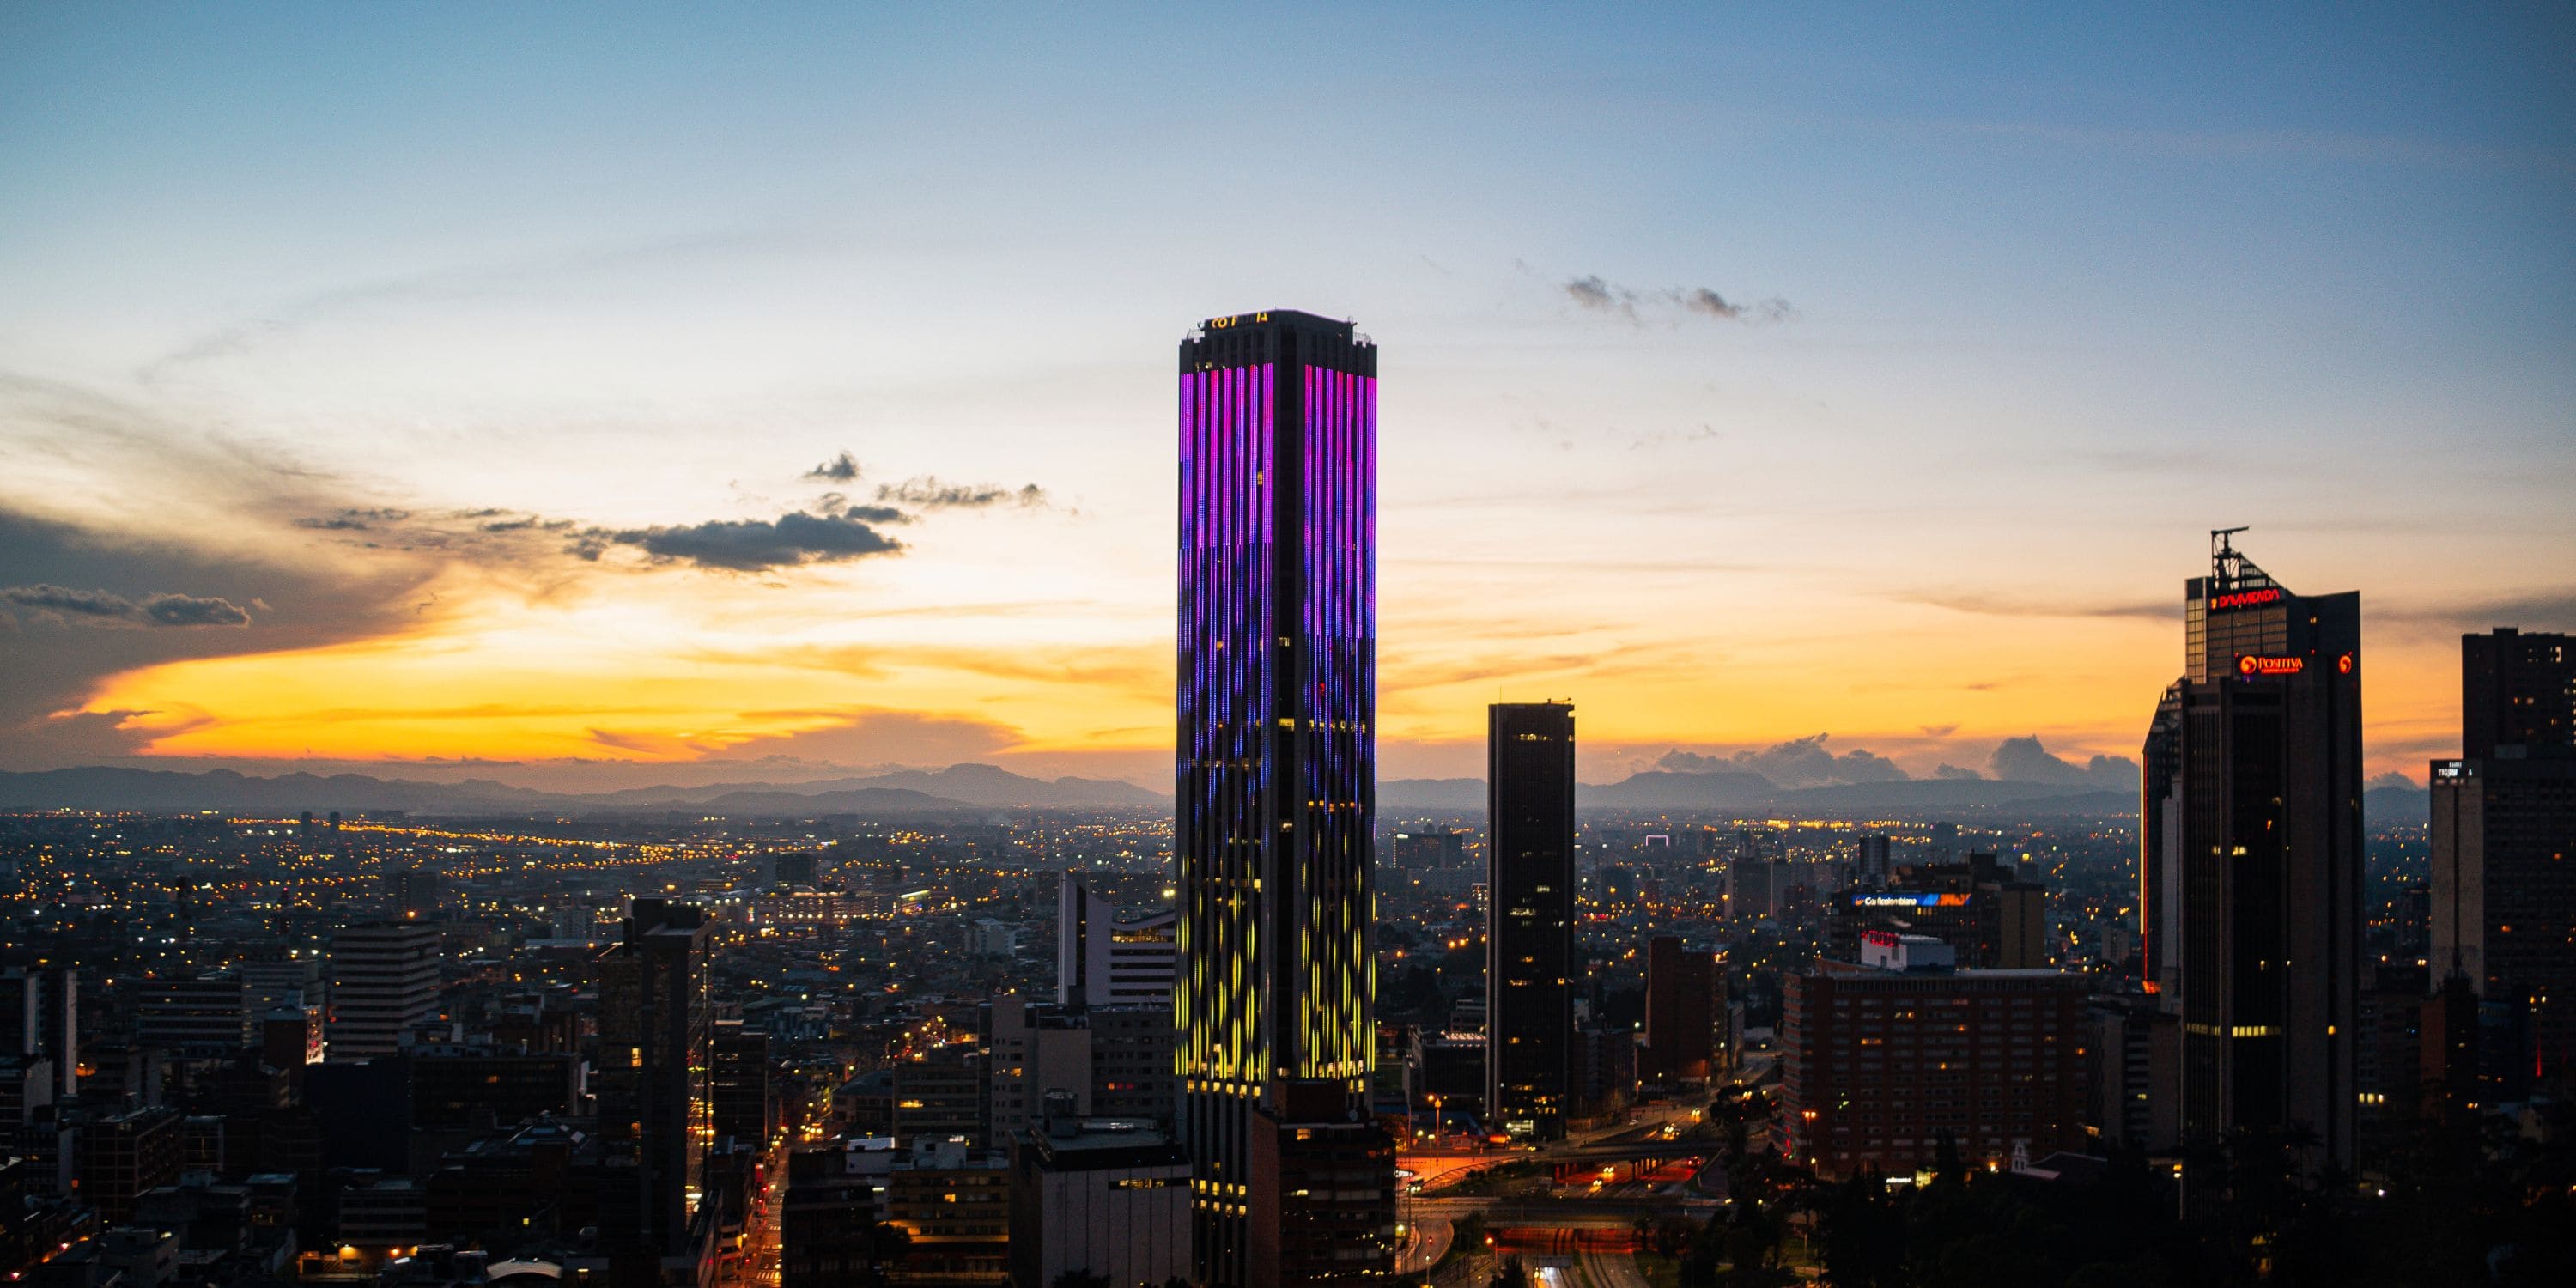 Los mejores restaurantes de Bogotá ¿dónde se encuentran? La Haus